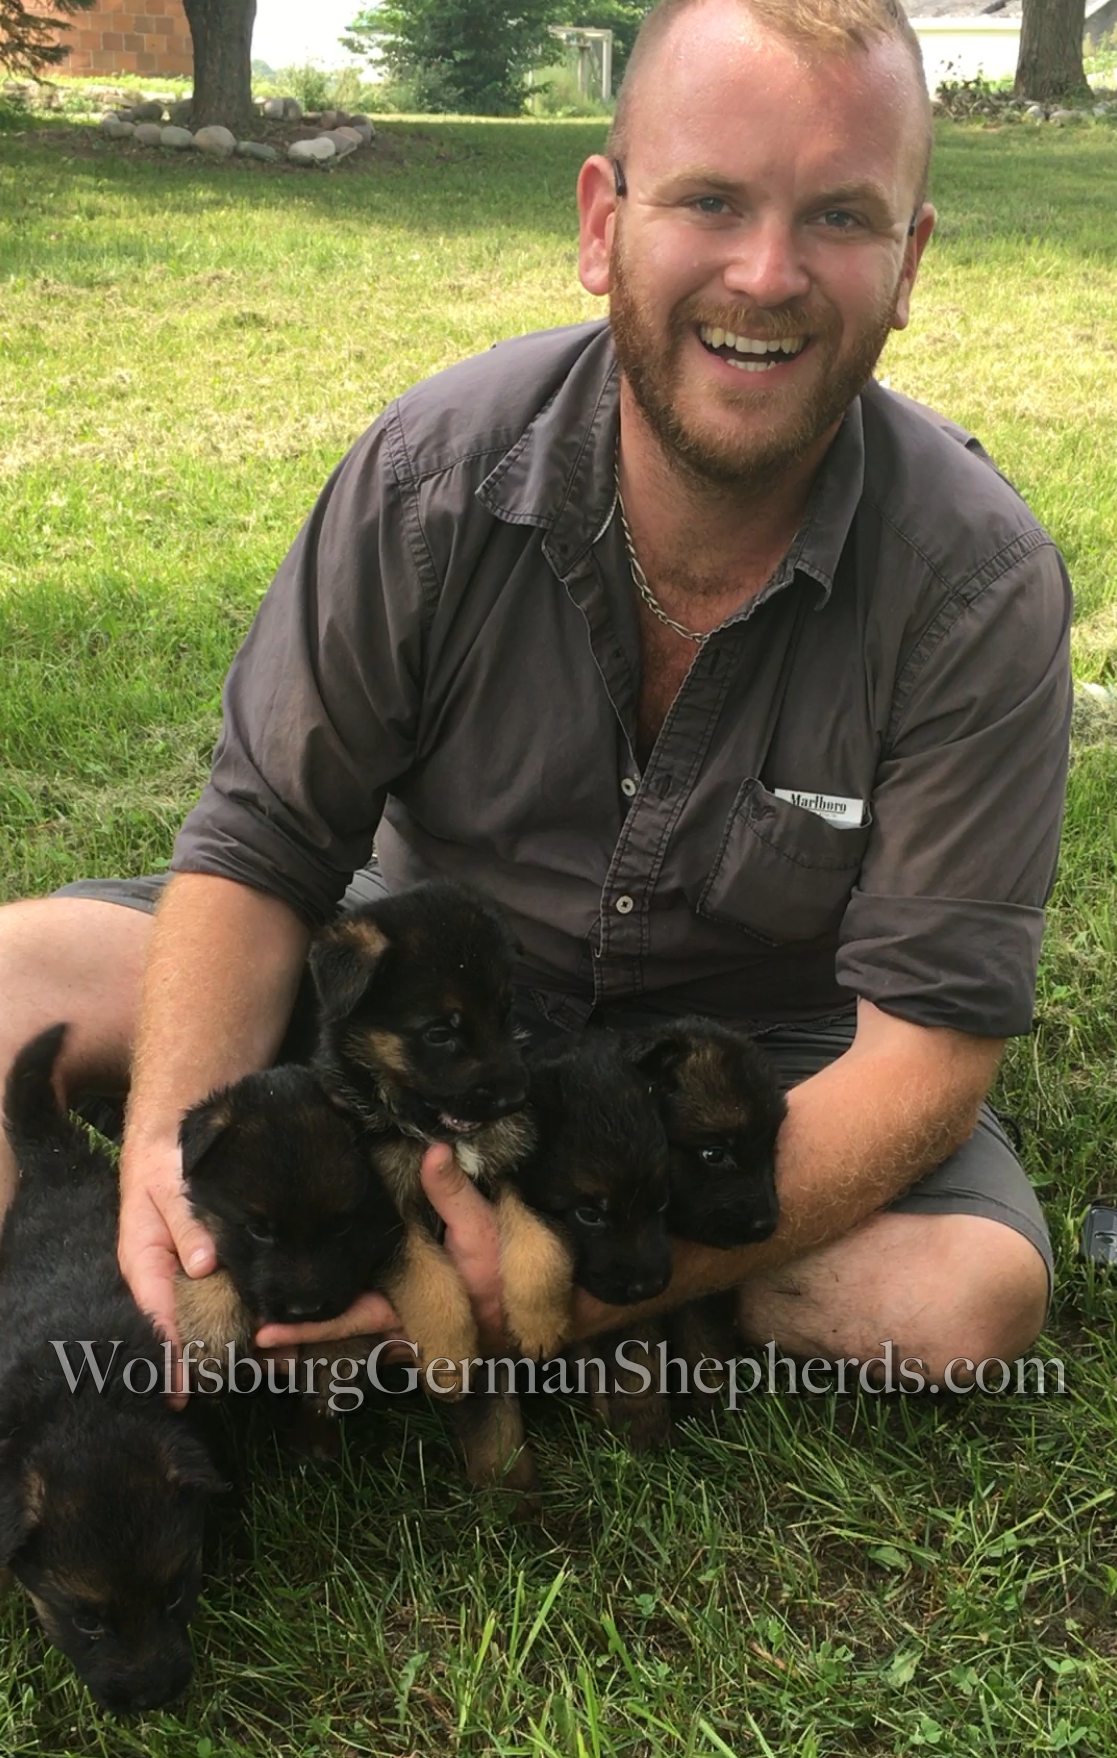 Michigan German Shepherd puppies for sale